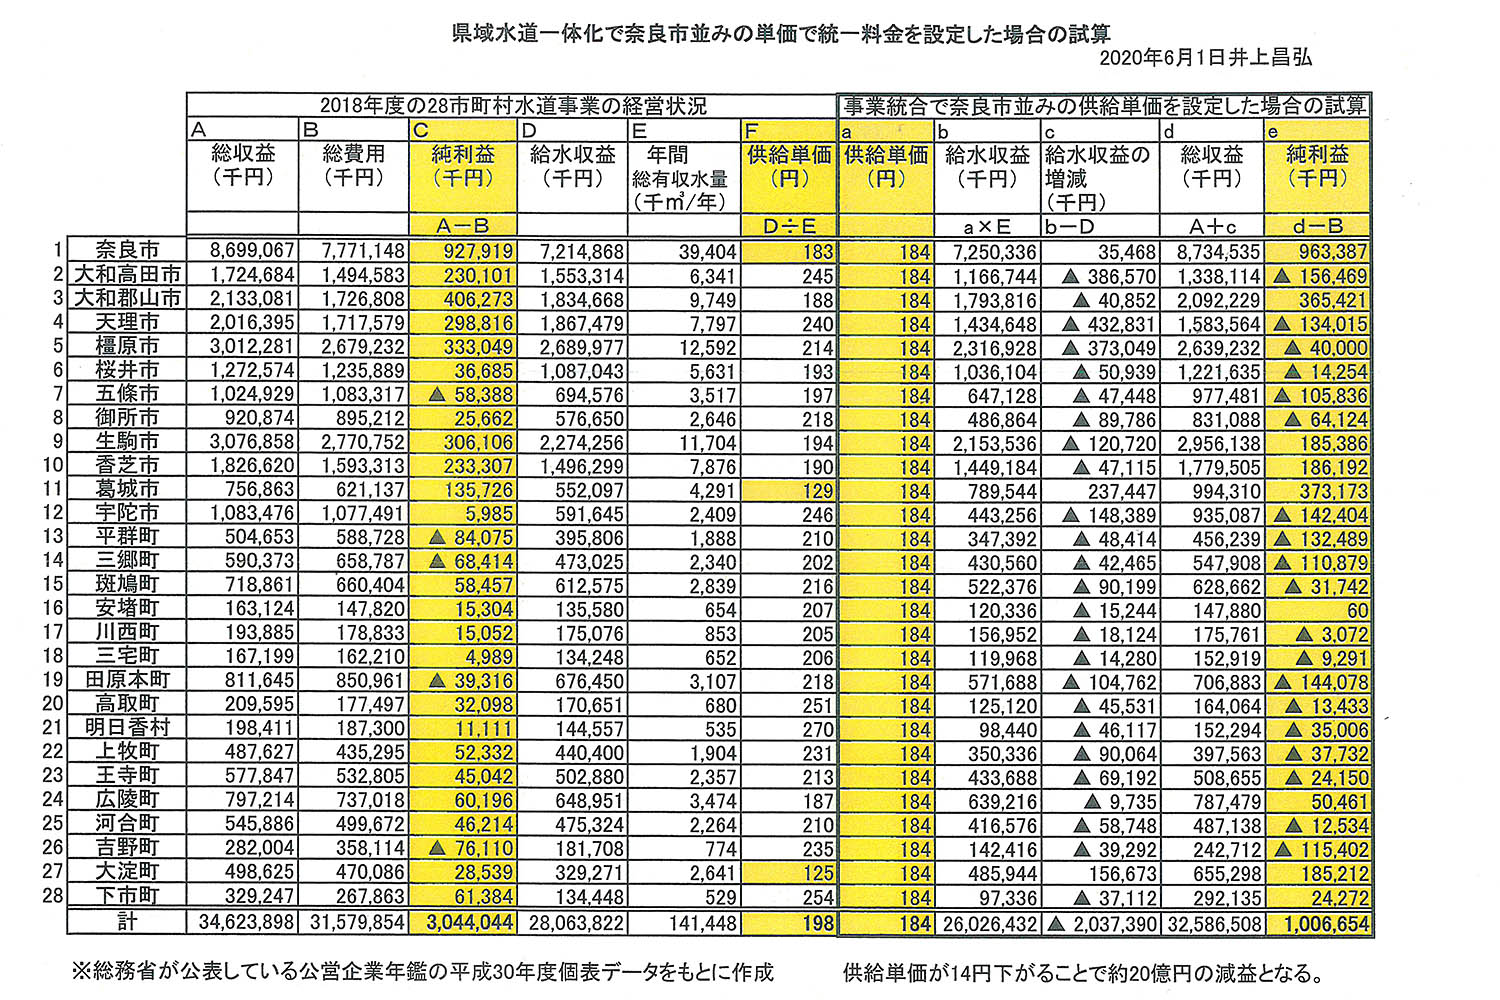 井上議員作成の資料「県域水道一体化で奈良市並みの単価で統一料金を設定した場合の試算」（奈良市議会ホームページから）